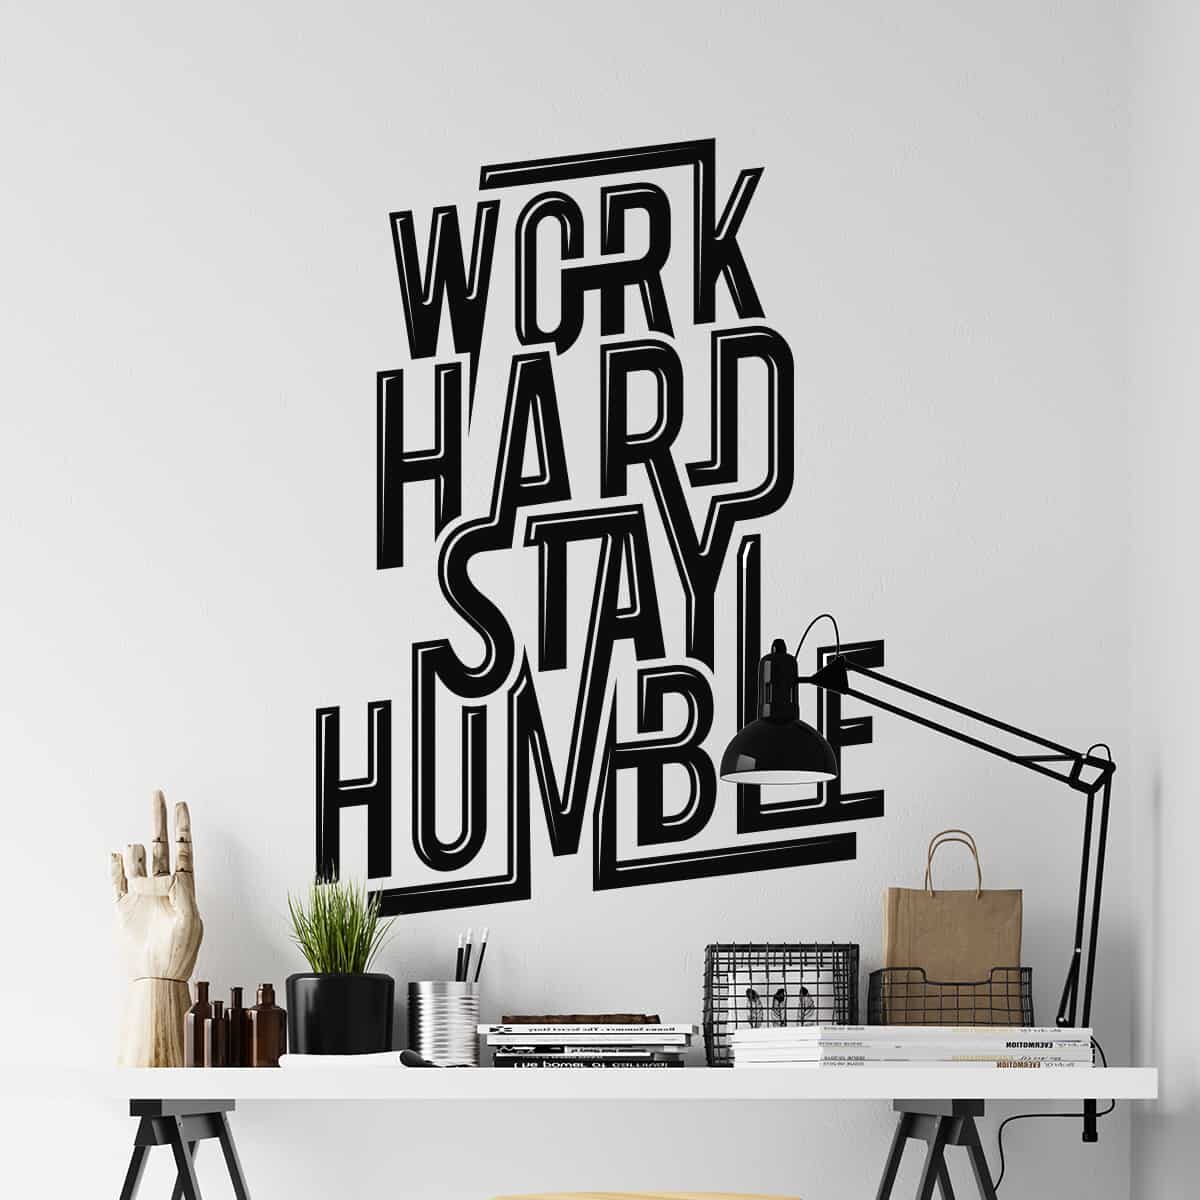 decoracion oficinas vinilos adhesivos de frases motivadoras para empresas adazio